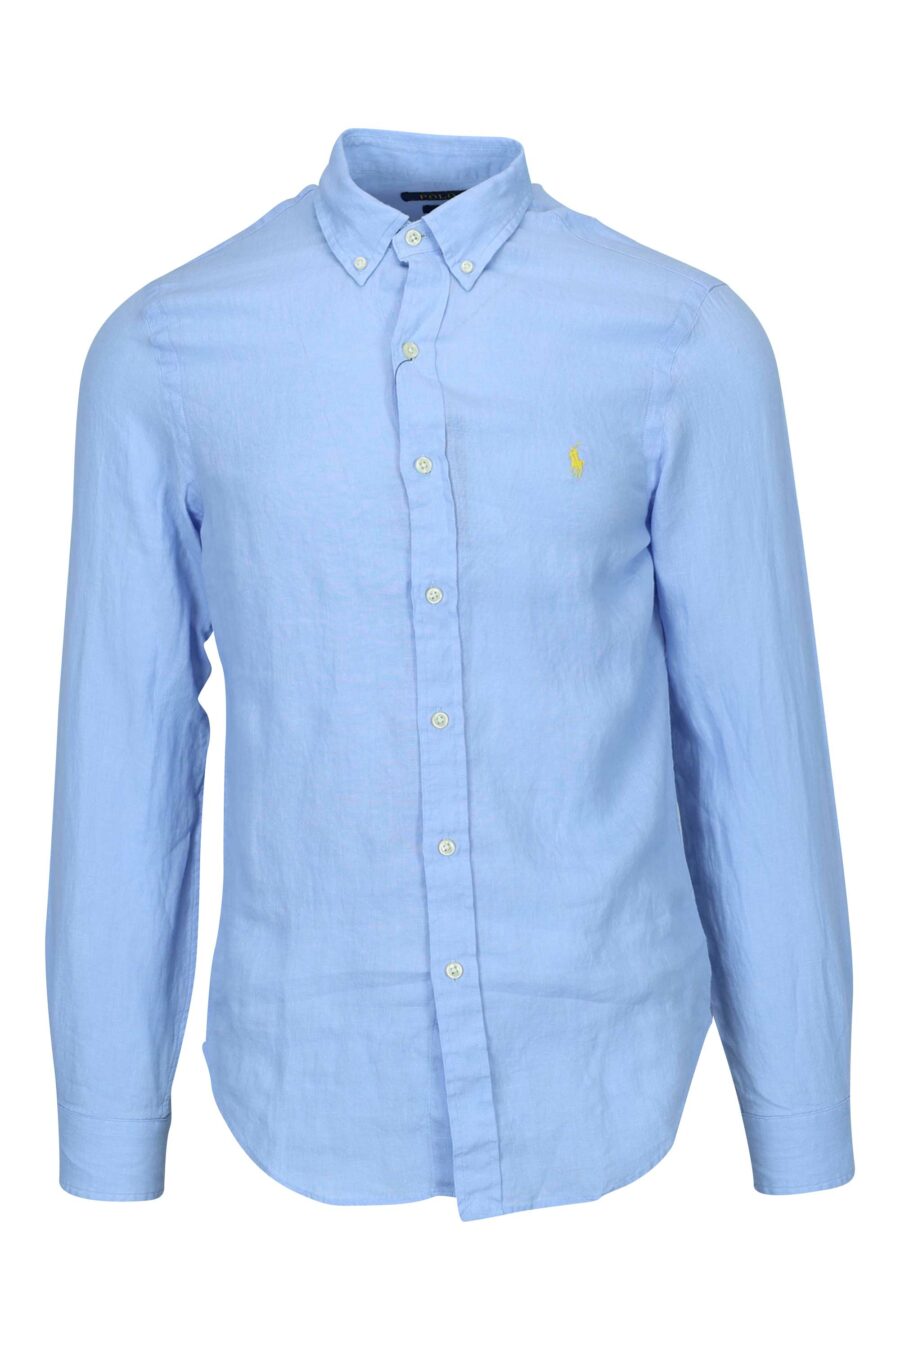 Chemise bleue avec mini-logo "polo" - 3616535910850